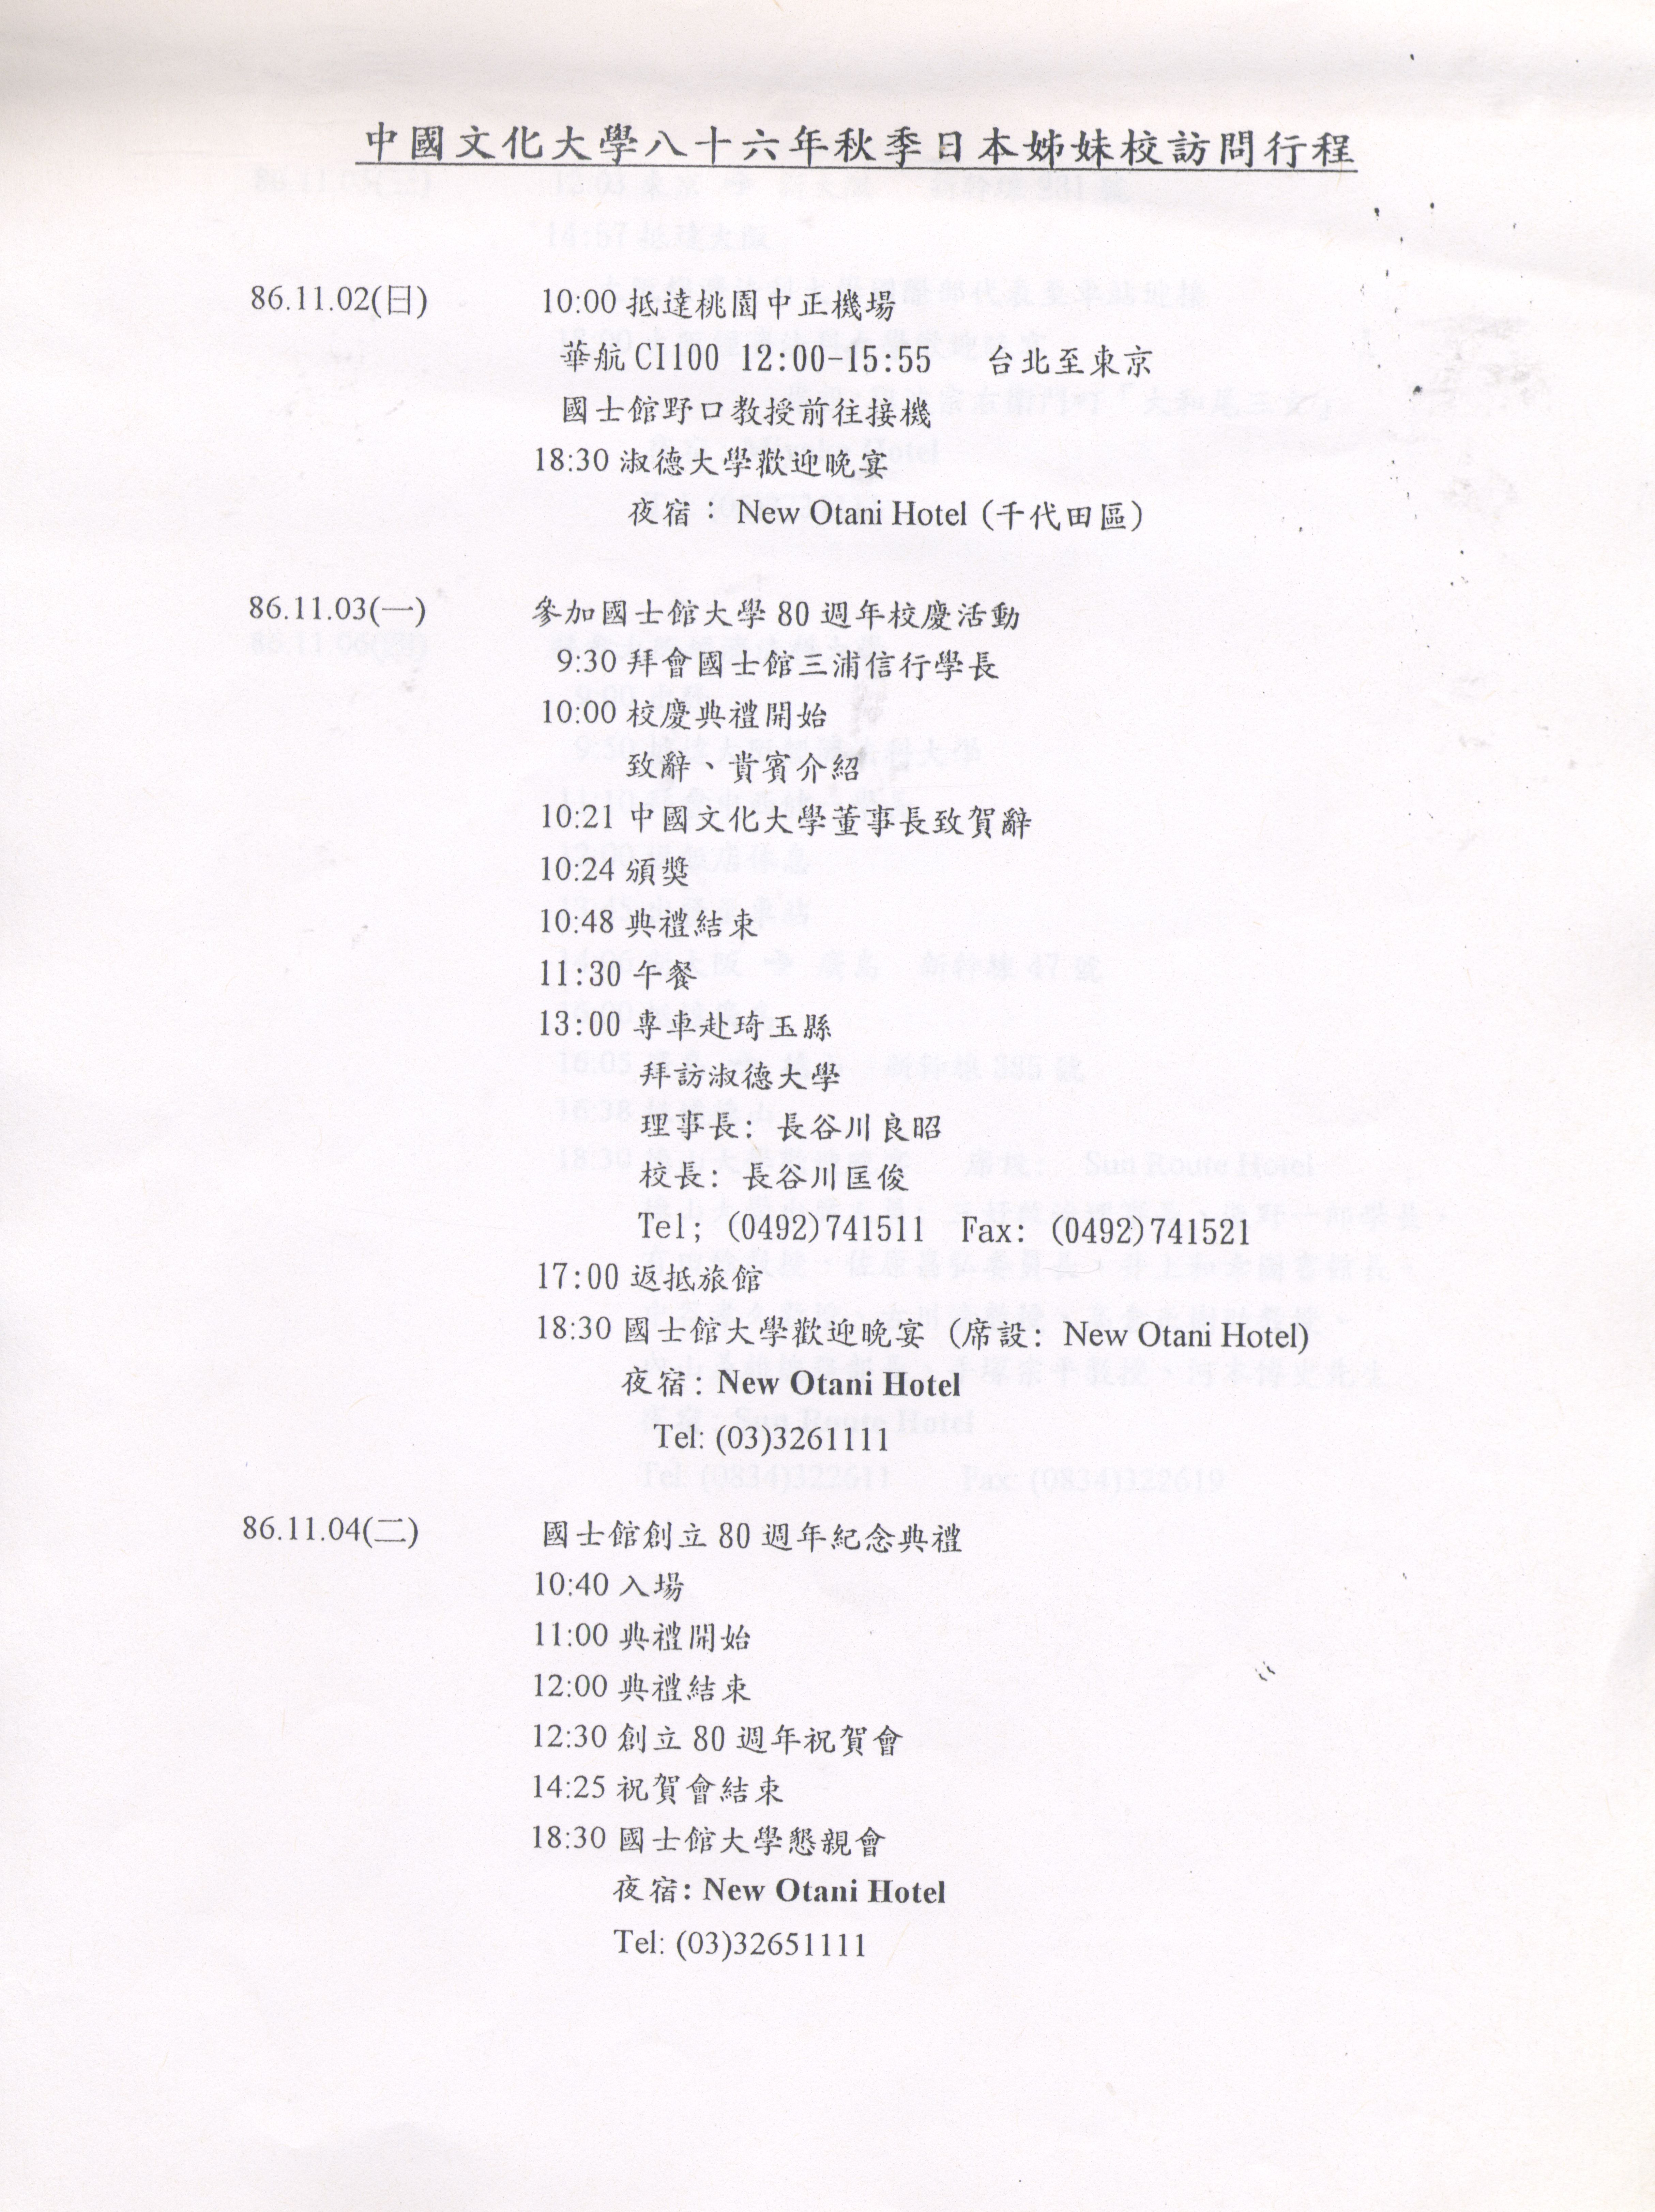 1997年11月2日至11月8日中國文化大學八十六年秋季日本姐妹校訪問行程規劃表的圖檔，第4張，共9張